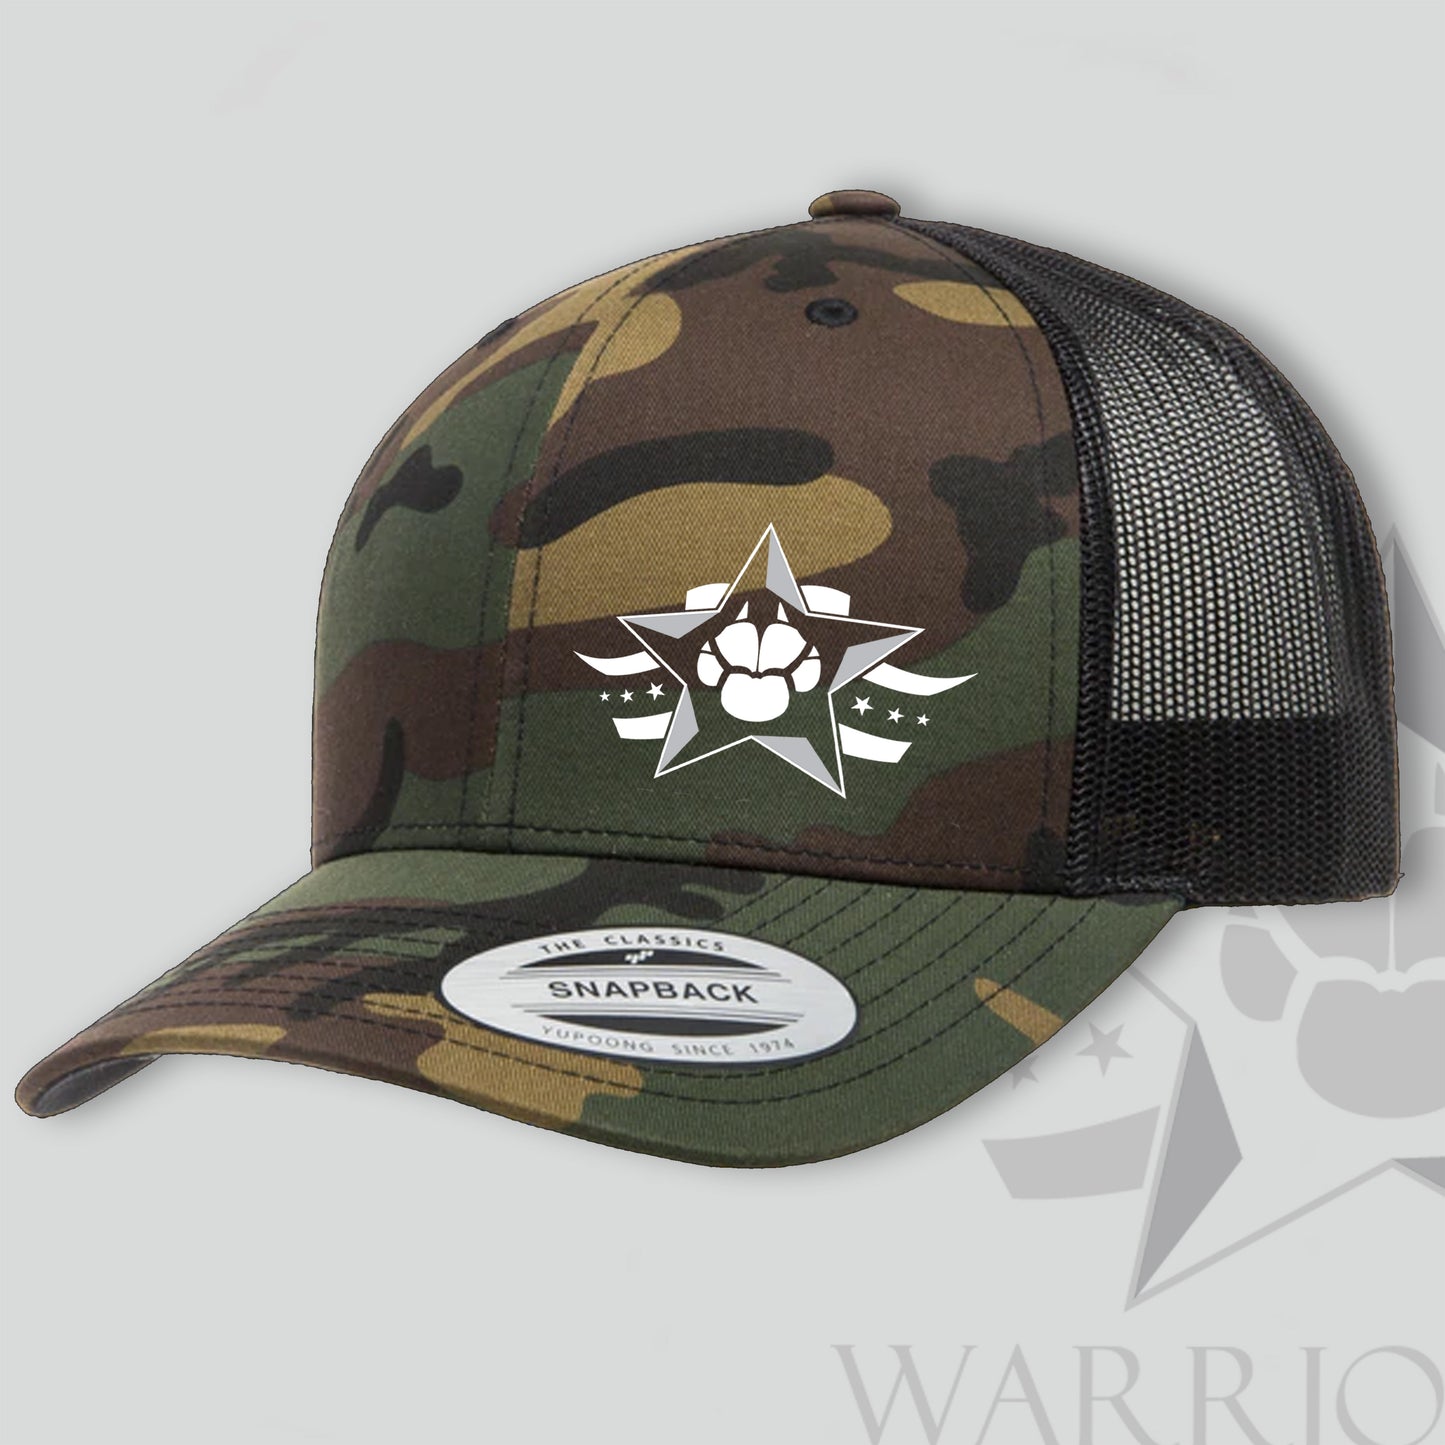 Warrior Dog Foundation Trucker Hat - Camouflage